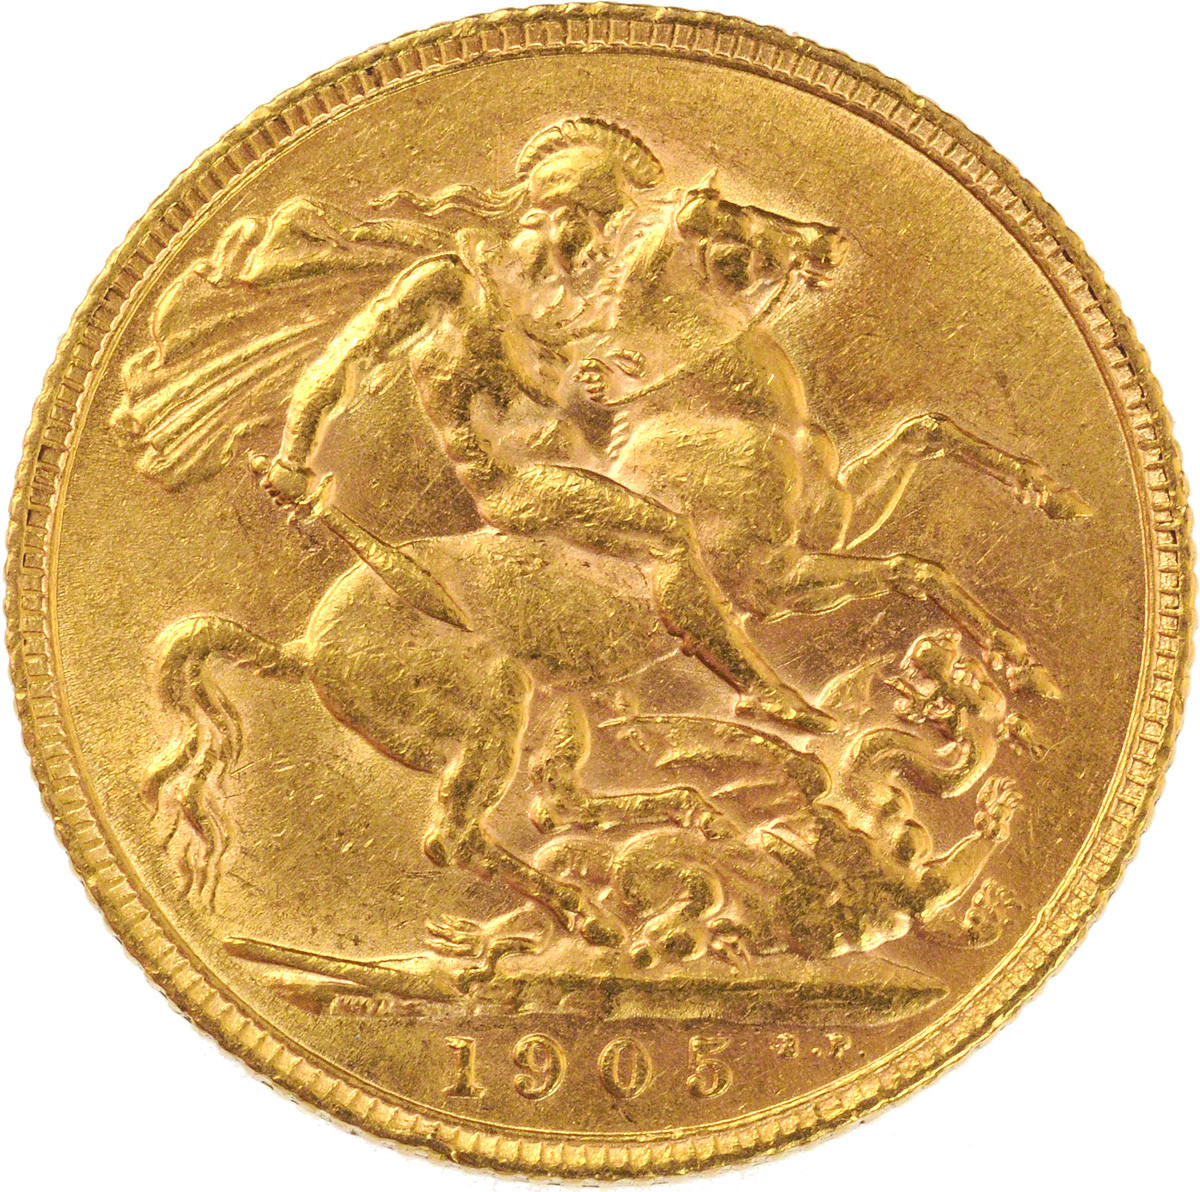 1905 Εδουάρδος Ζ’ (Νομισματοκοπείο Λονδίνου)